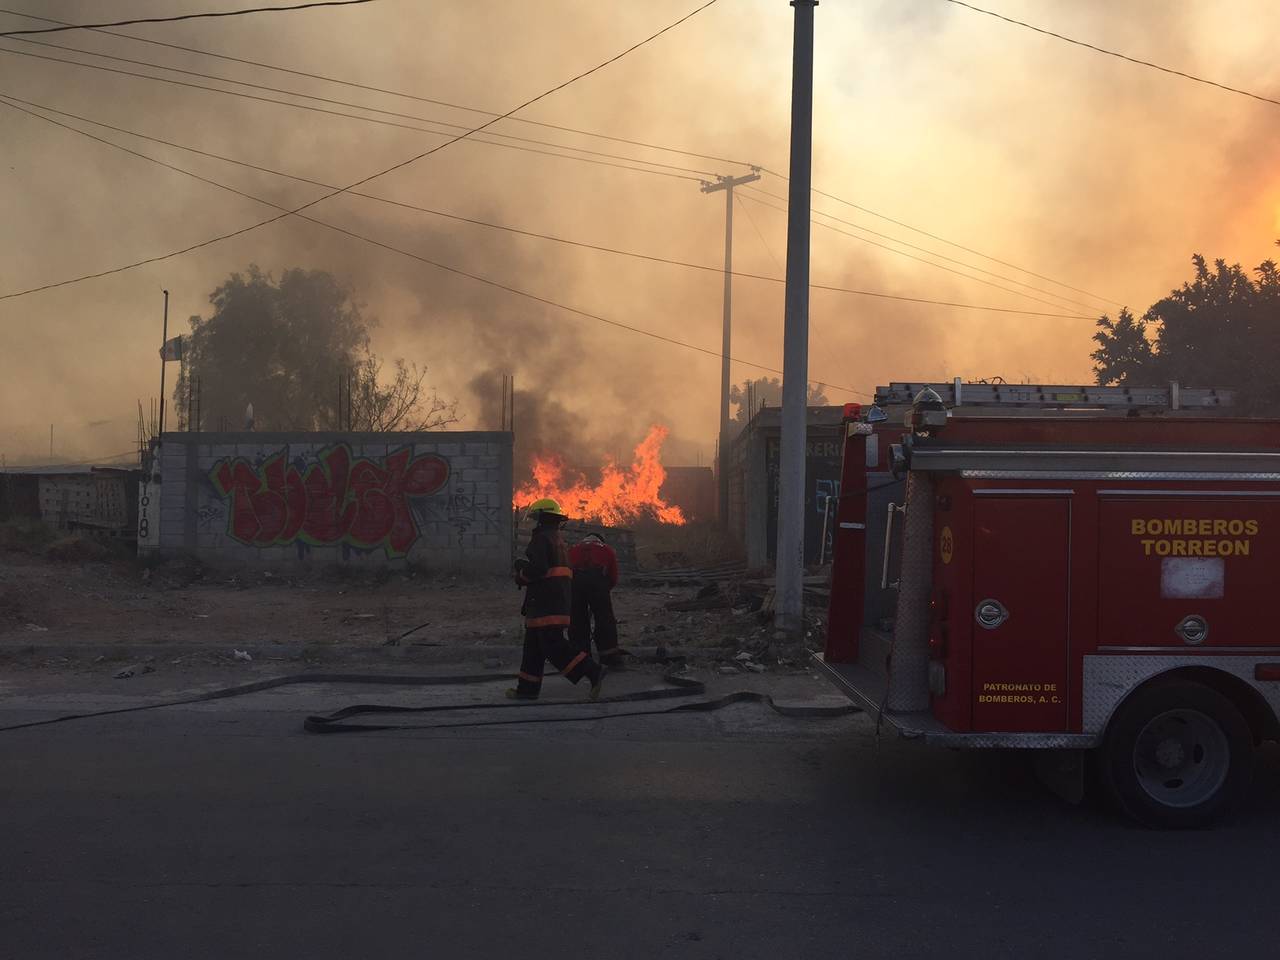 Vientos provocan un fuerte incendio - El Siglo de Torreón - El Siglo de Torreón